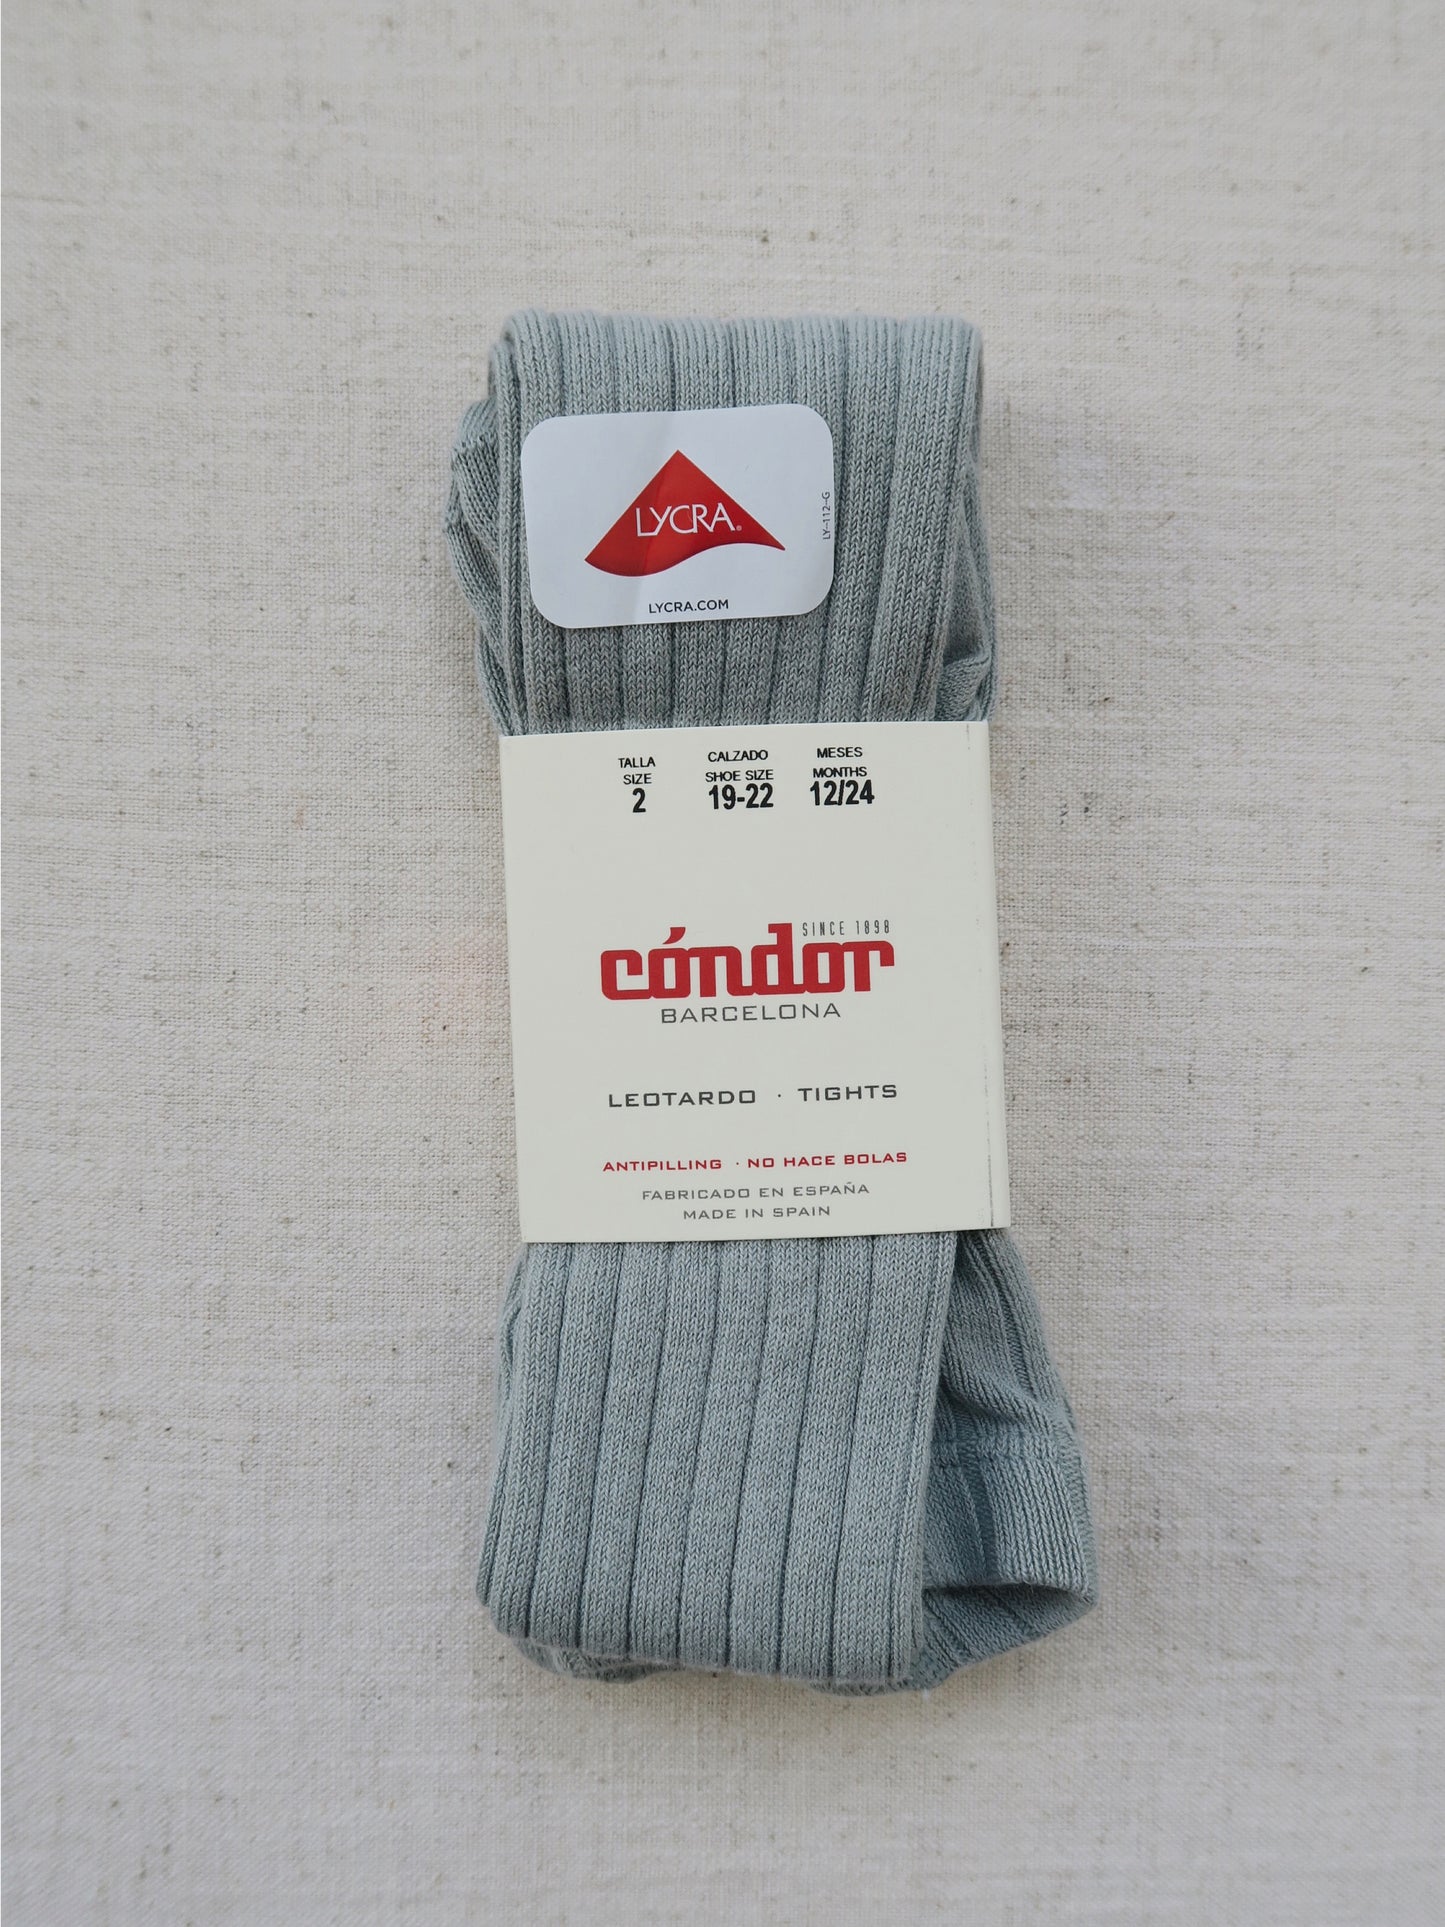 Cóndor - Cotton rib tights - 756 / Dry Green